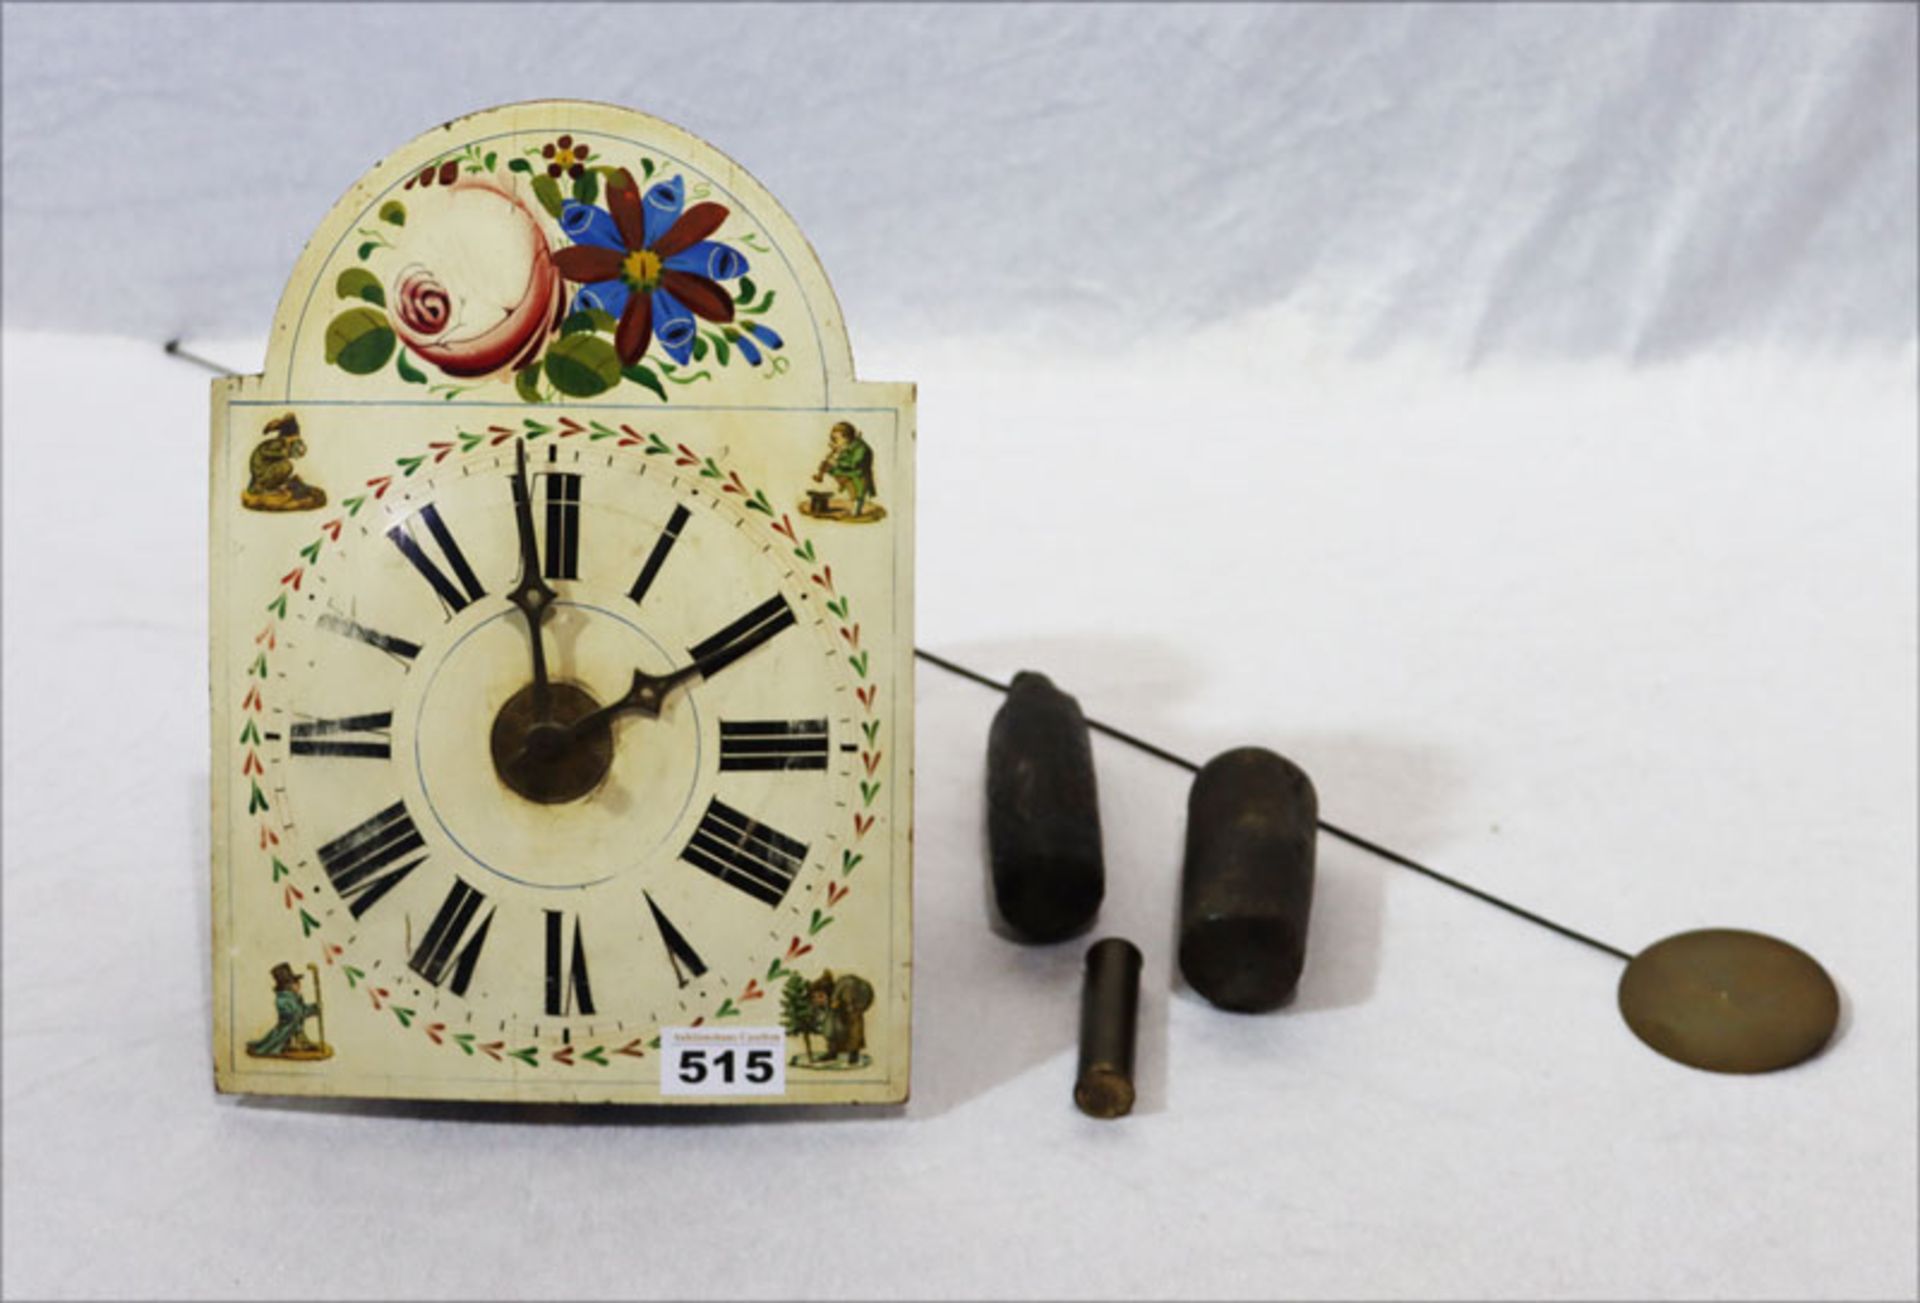 Schildblatt Wanduhr mit Glocke, Blumendekor, Pendel und 3 Gewichte, Alters- und Gebrauchsspuren, H